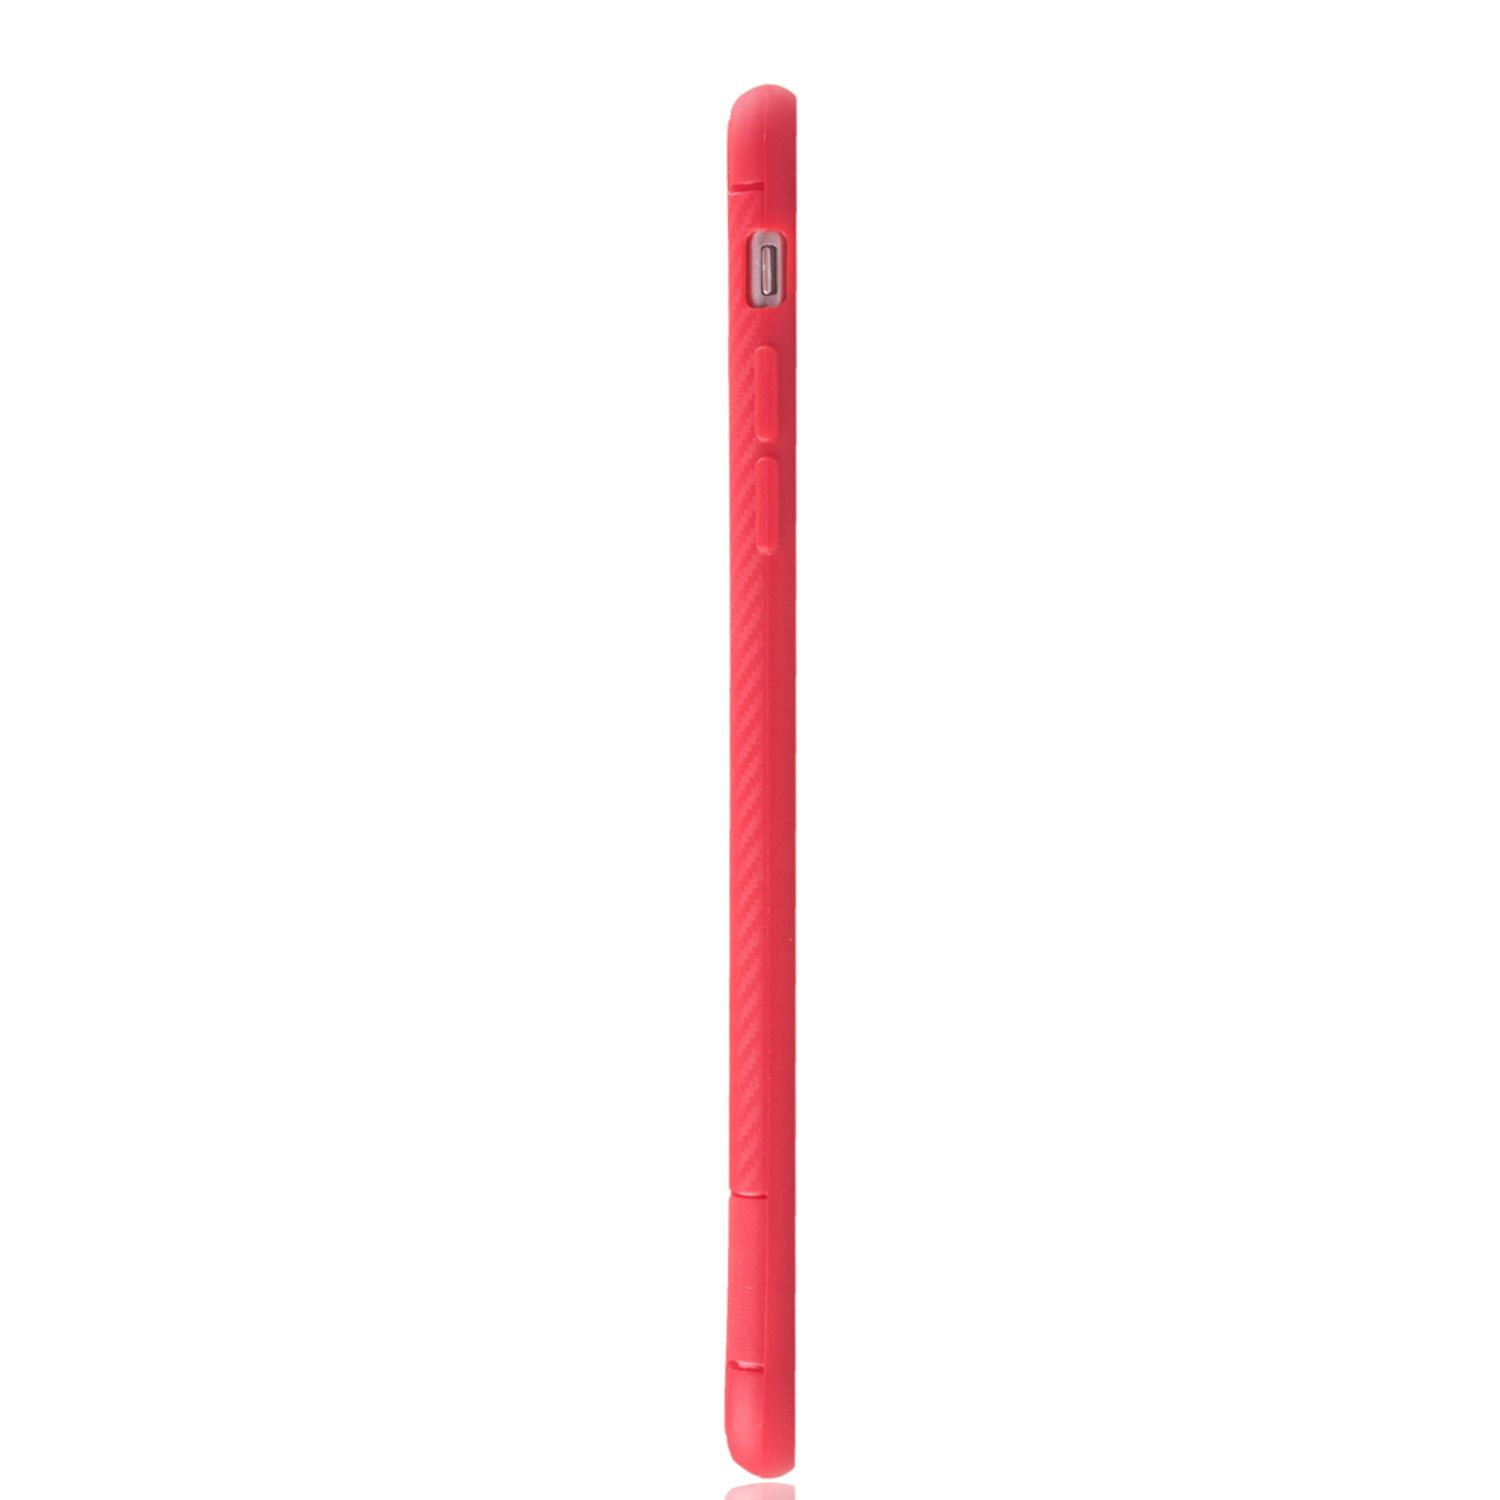 KÖNIG DESIGN / Plus, Rot Schutzhülle, Plus IPhone Backcover, 6 6s Apple